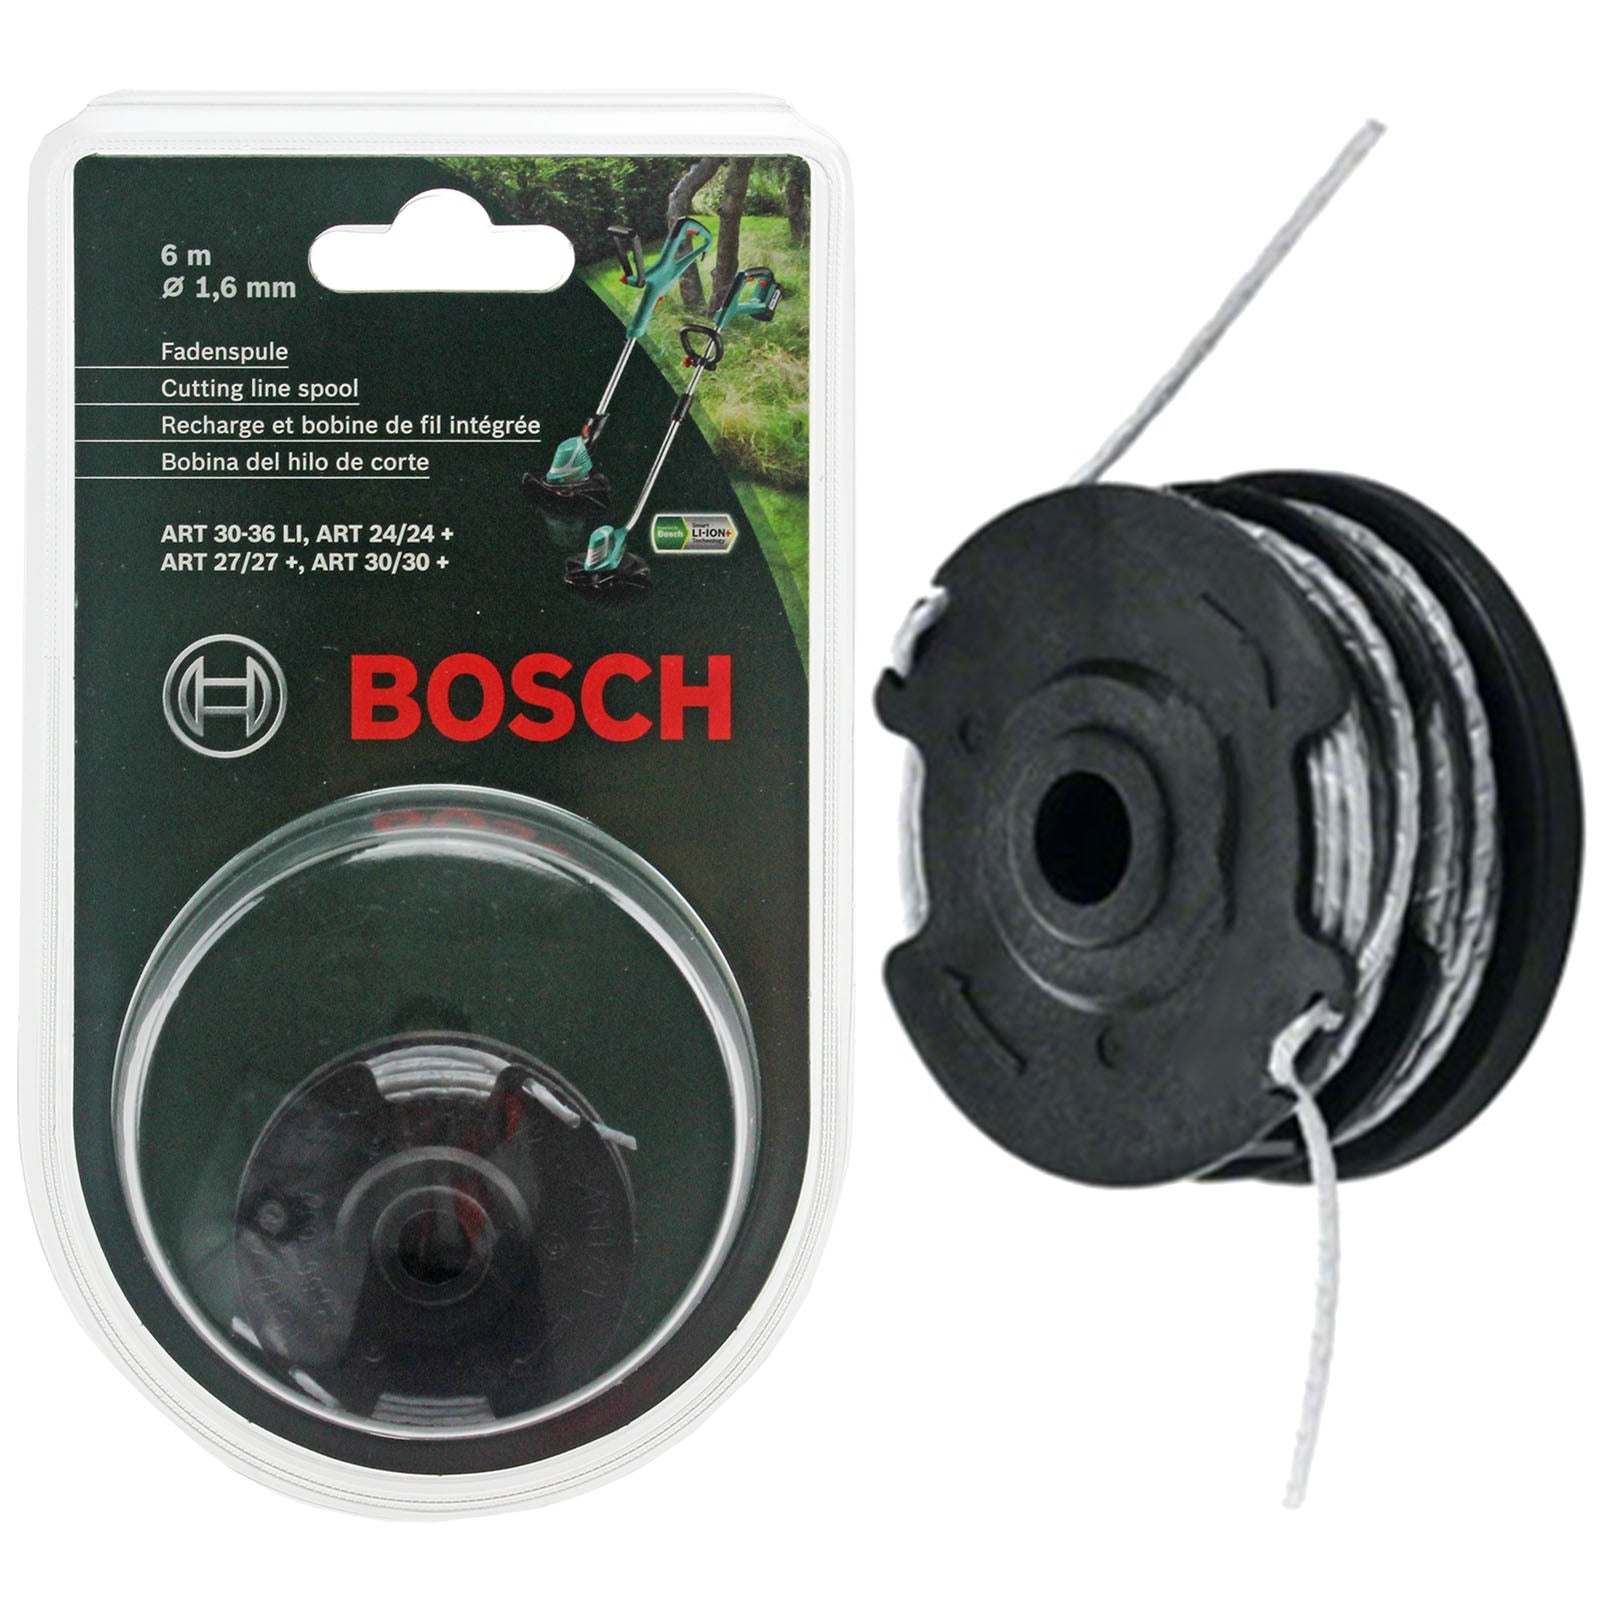 Bosch ART 24 27 30 30-36 LI Genuine Strimmer Trimmer Cutting Line Spool Feed 6m 1.6mm - F016800351